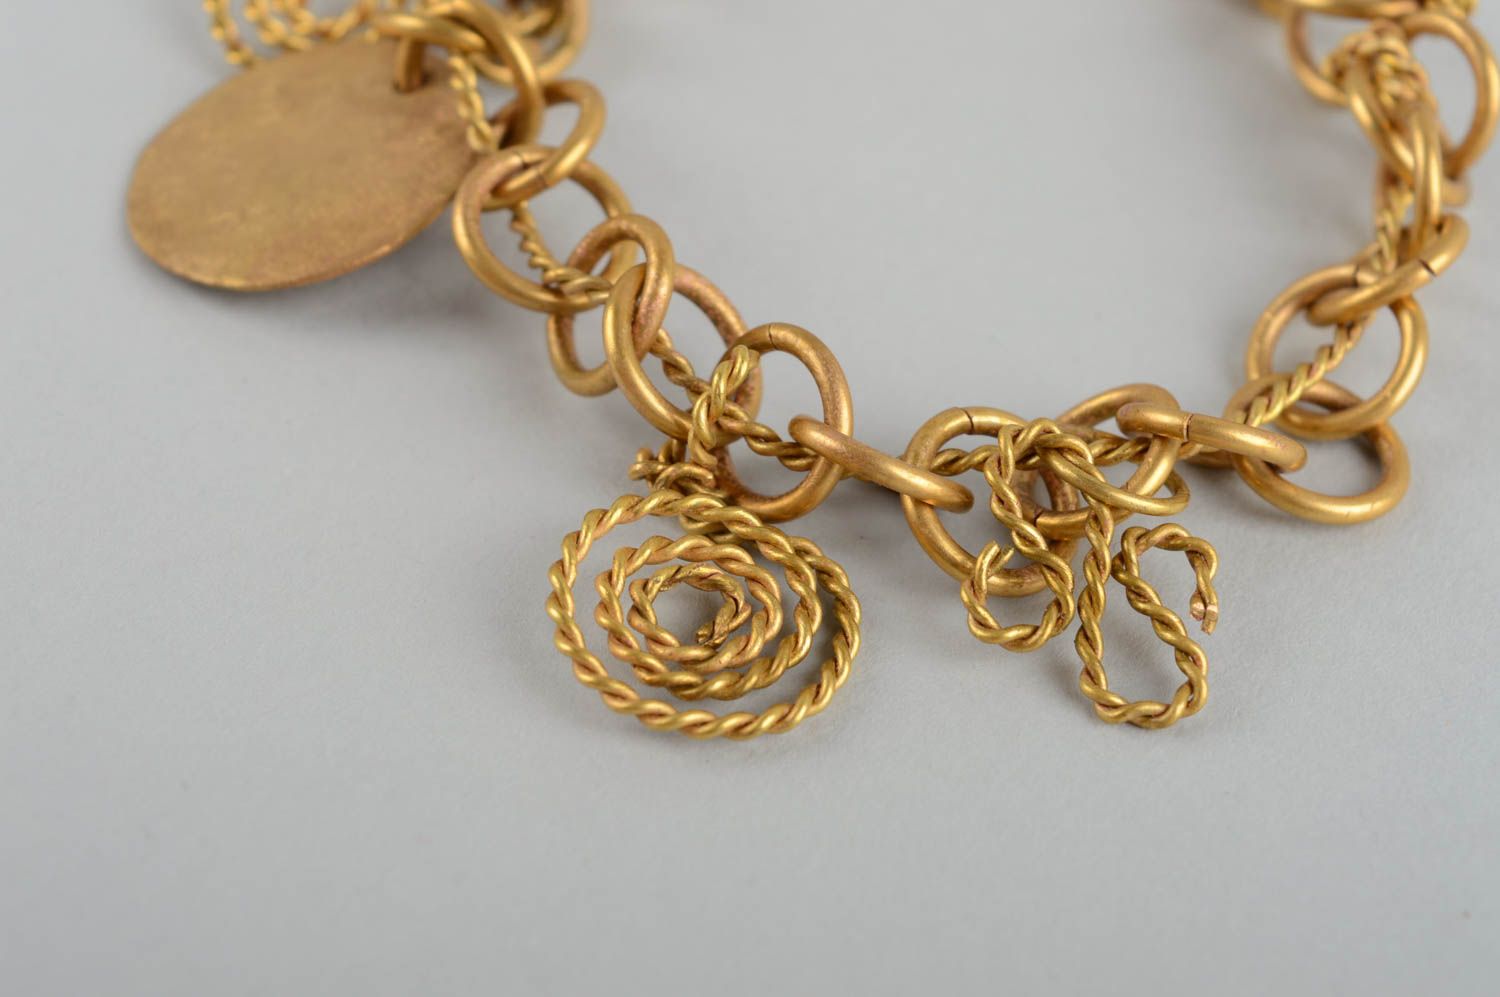 Handmade bracelet metal bracelet metal jewelry best gifts for women photo 4